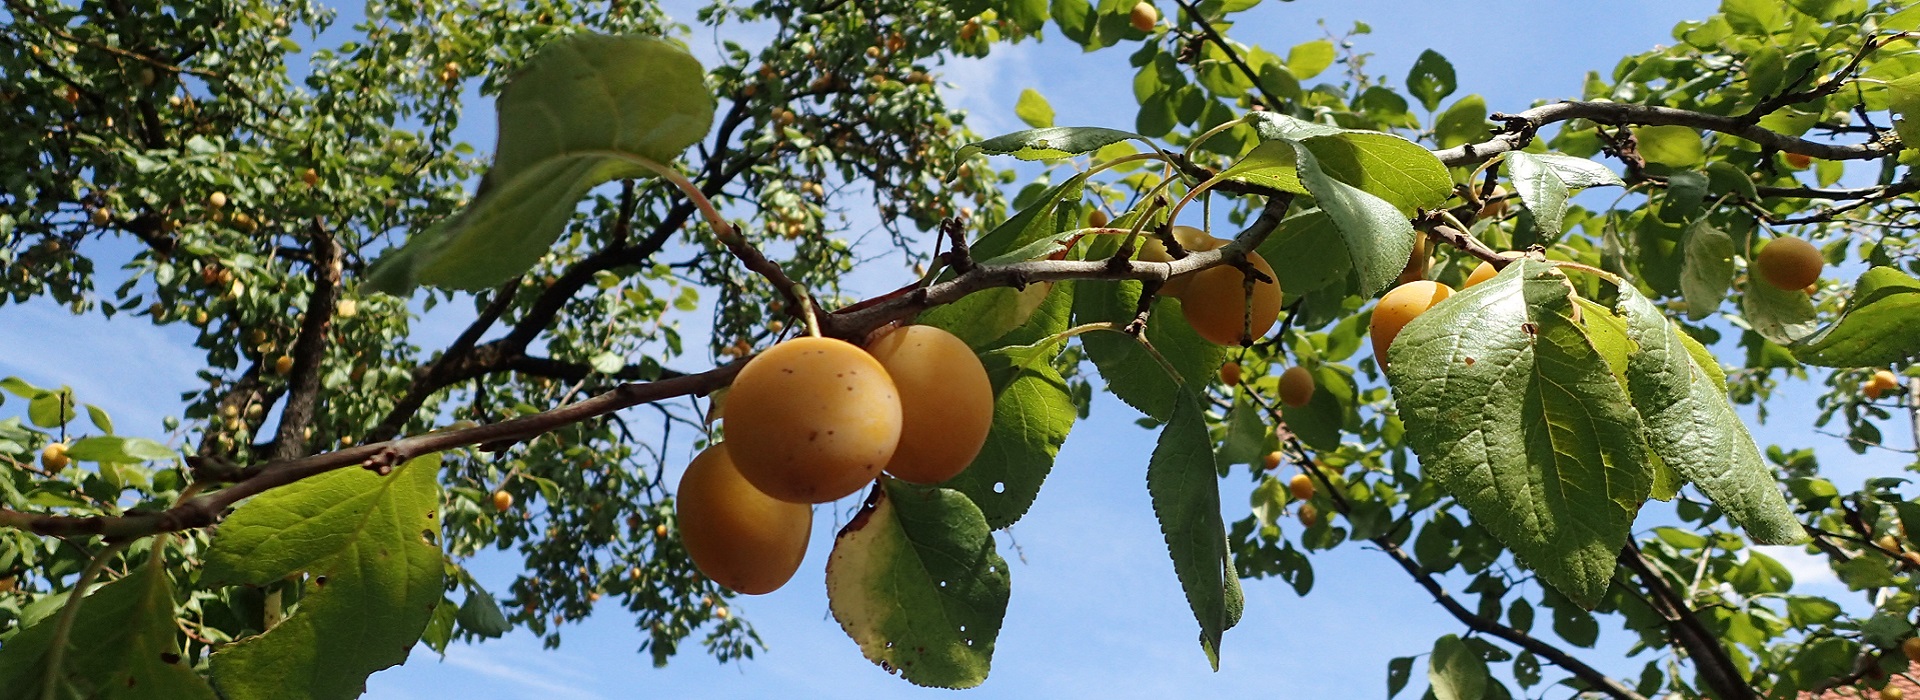 Spindling Frucht am Baum